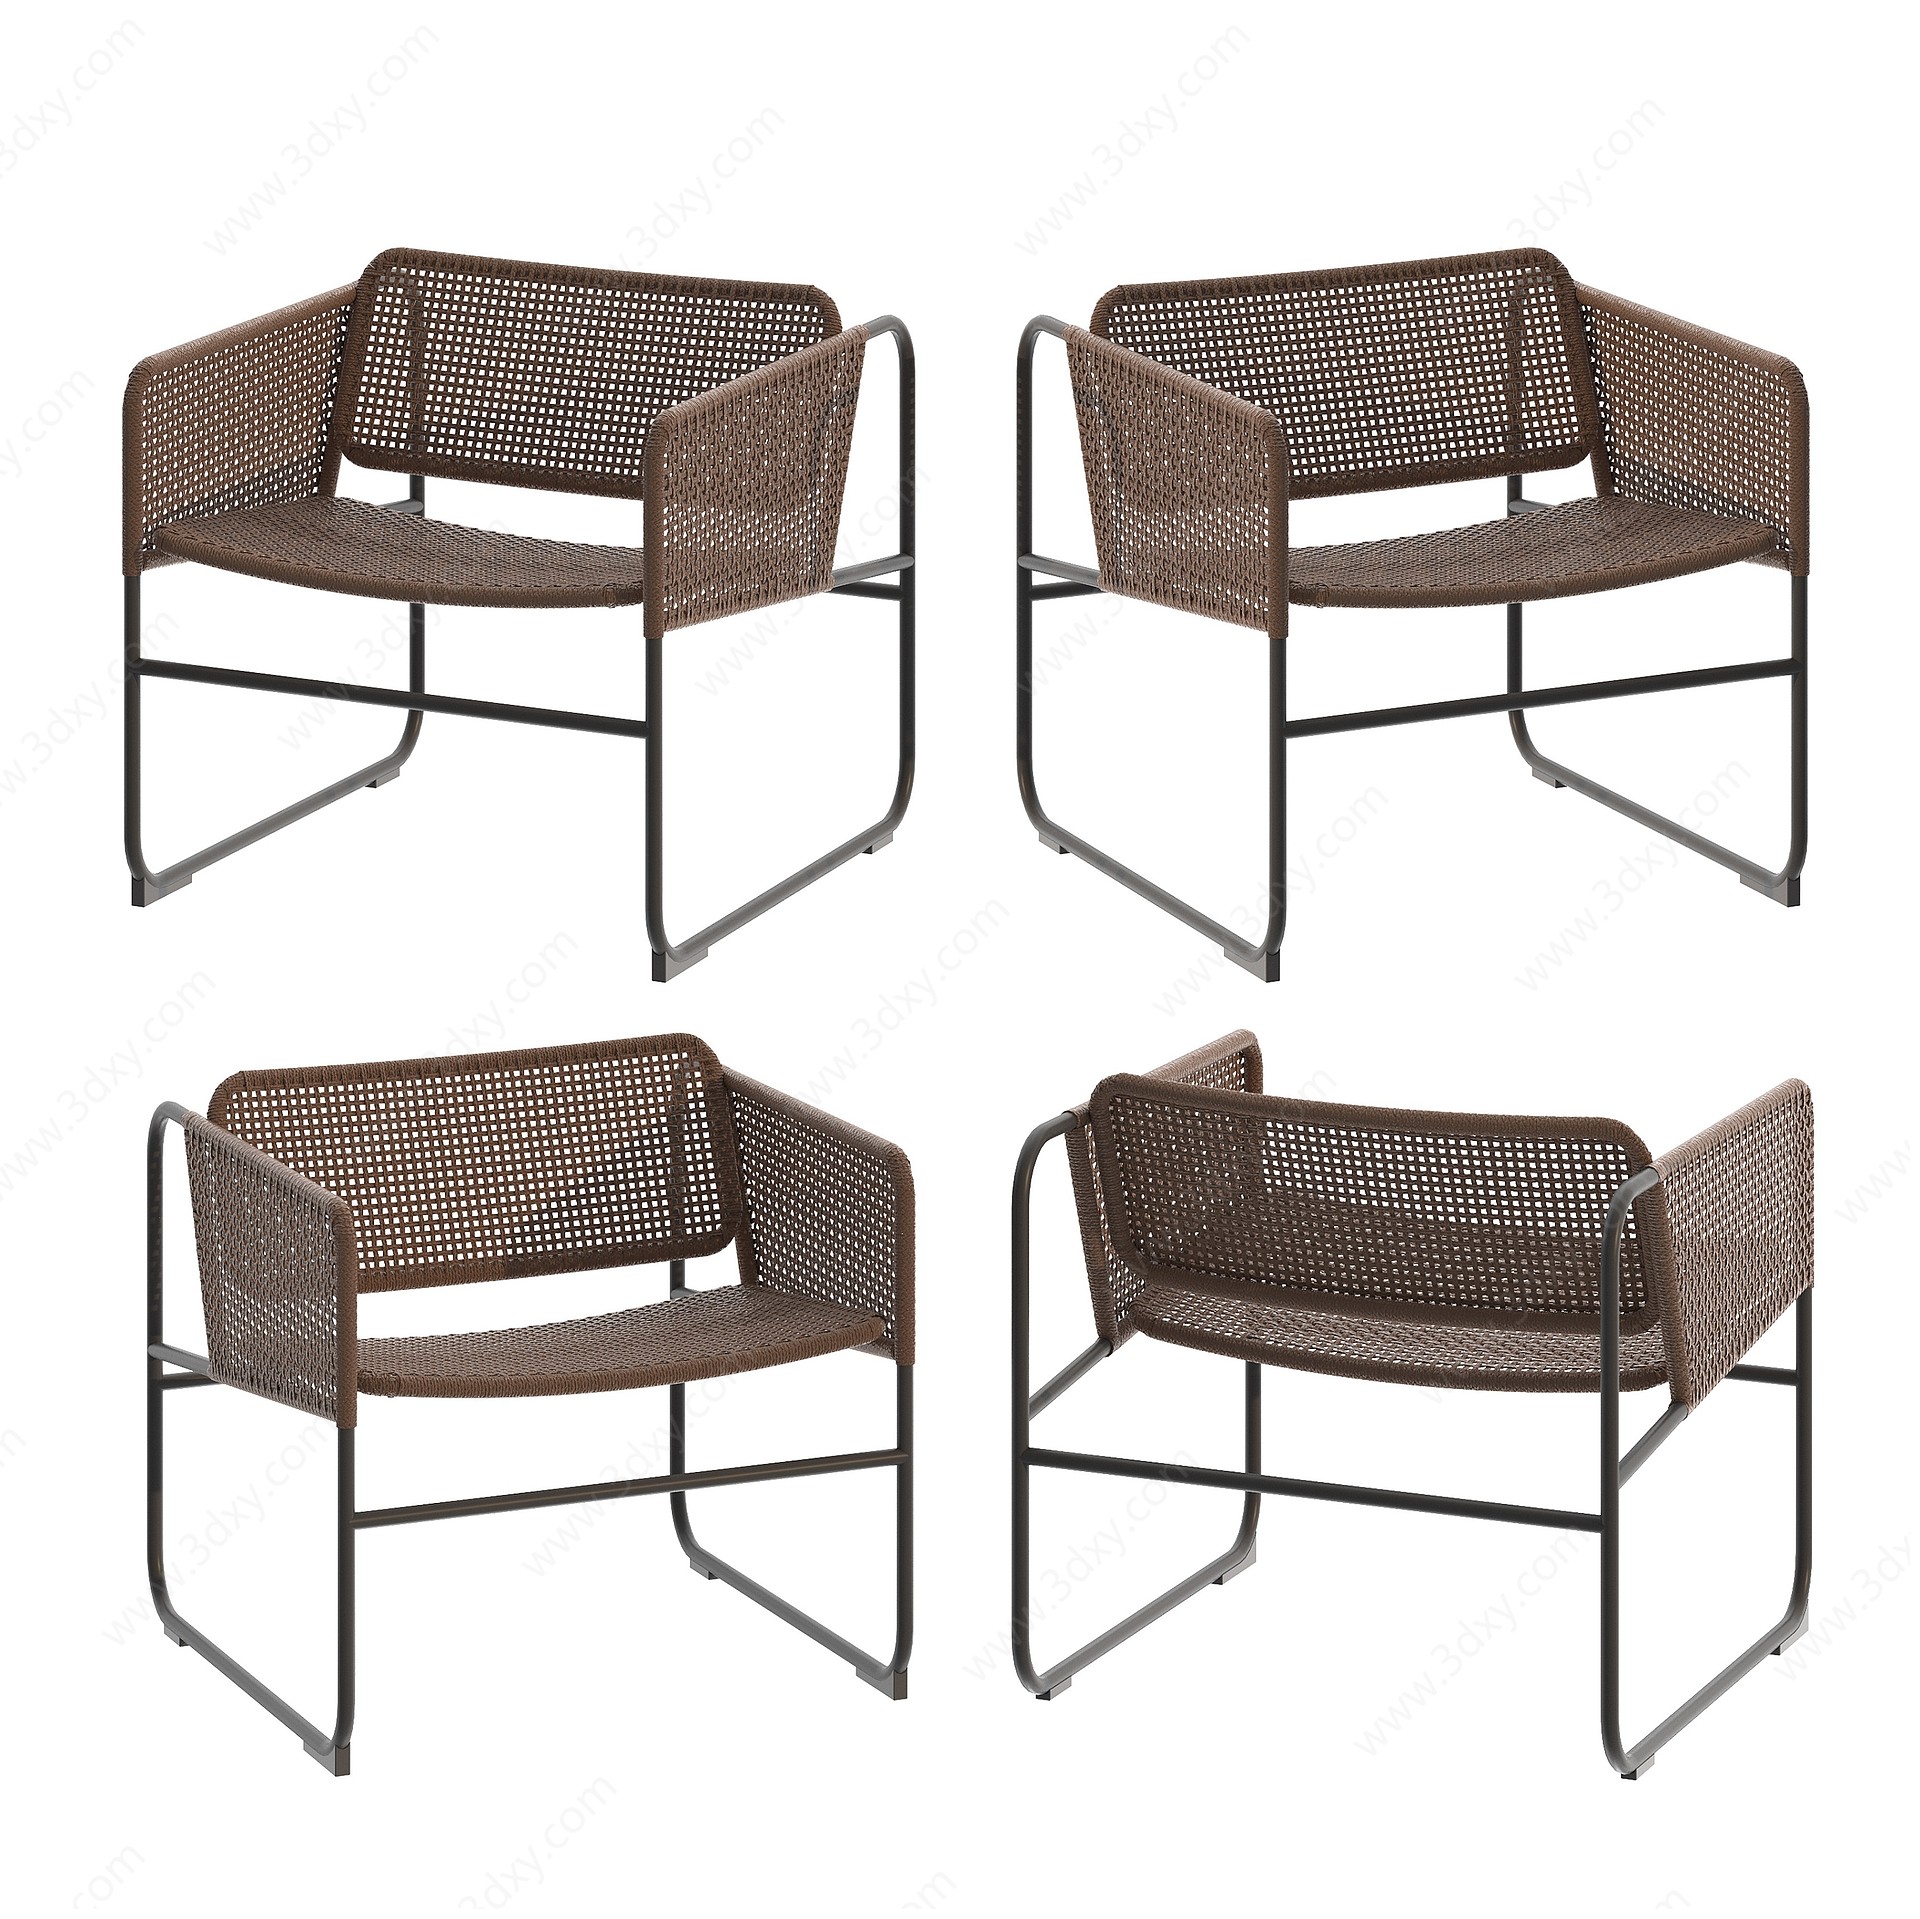 IKEA户外藤编椅3D模型